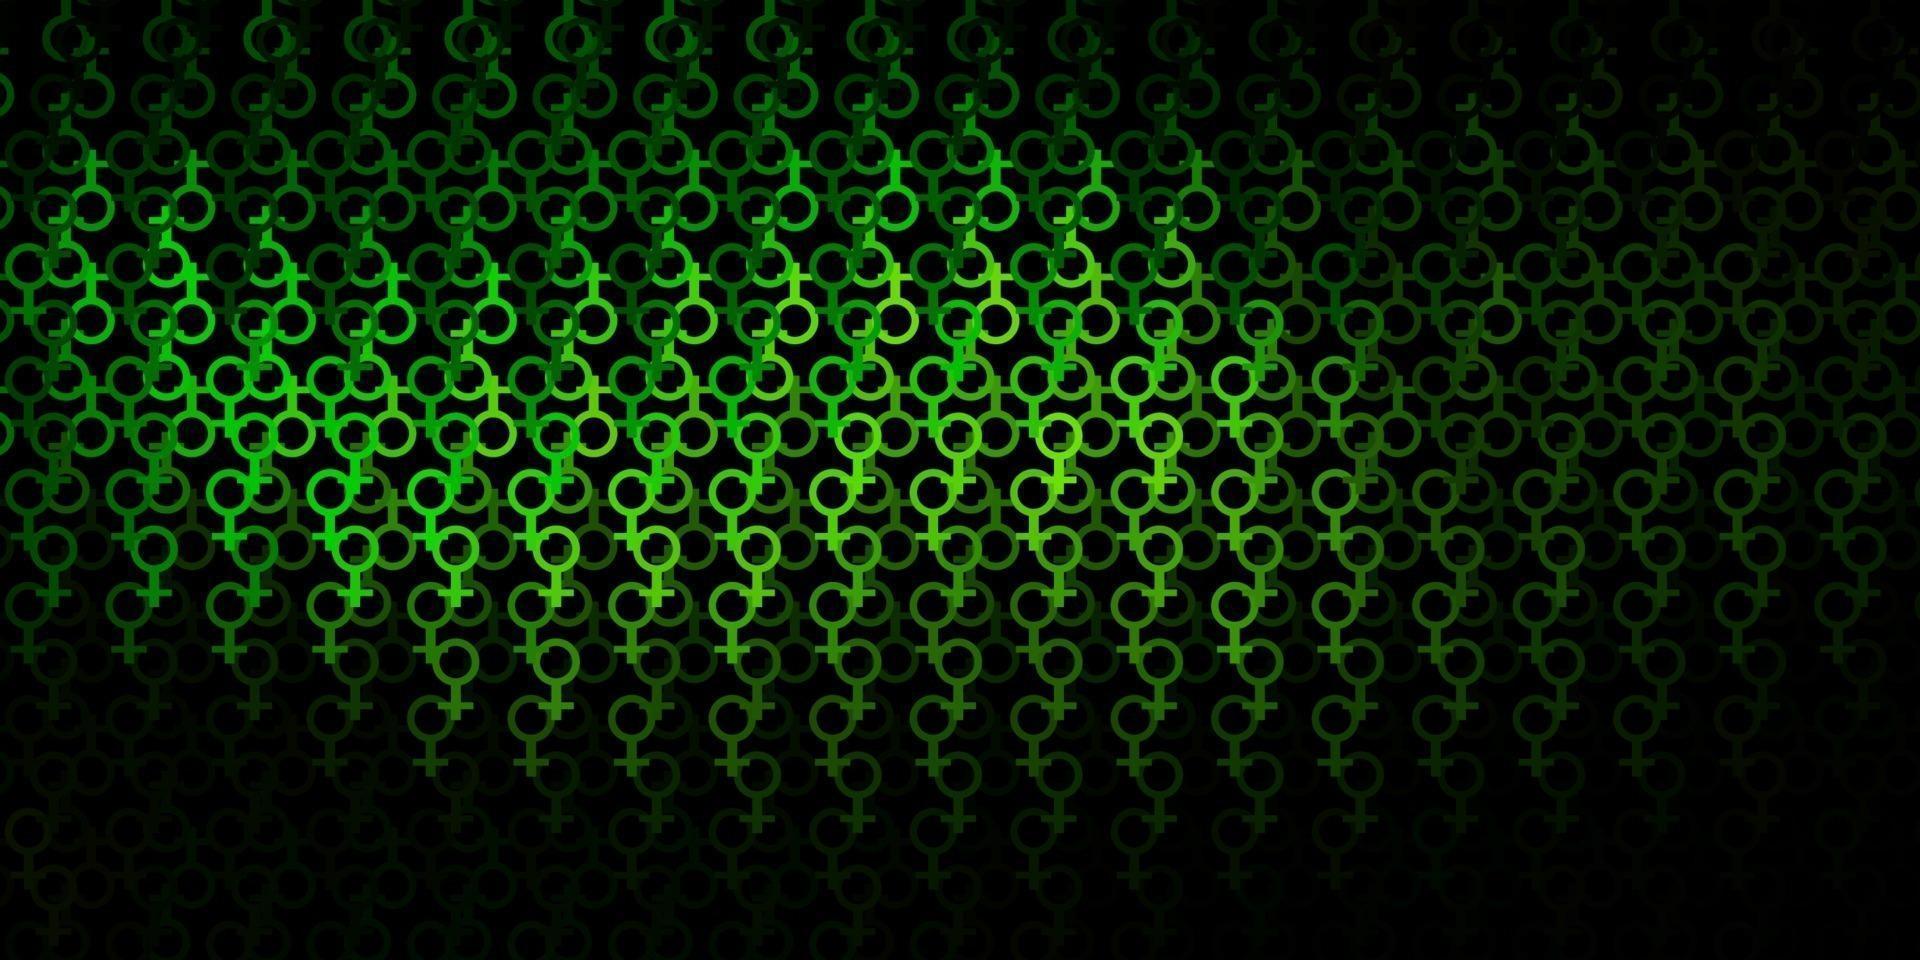 trama vettoriale verde scuro con simboli religiosi.